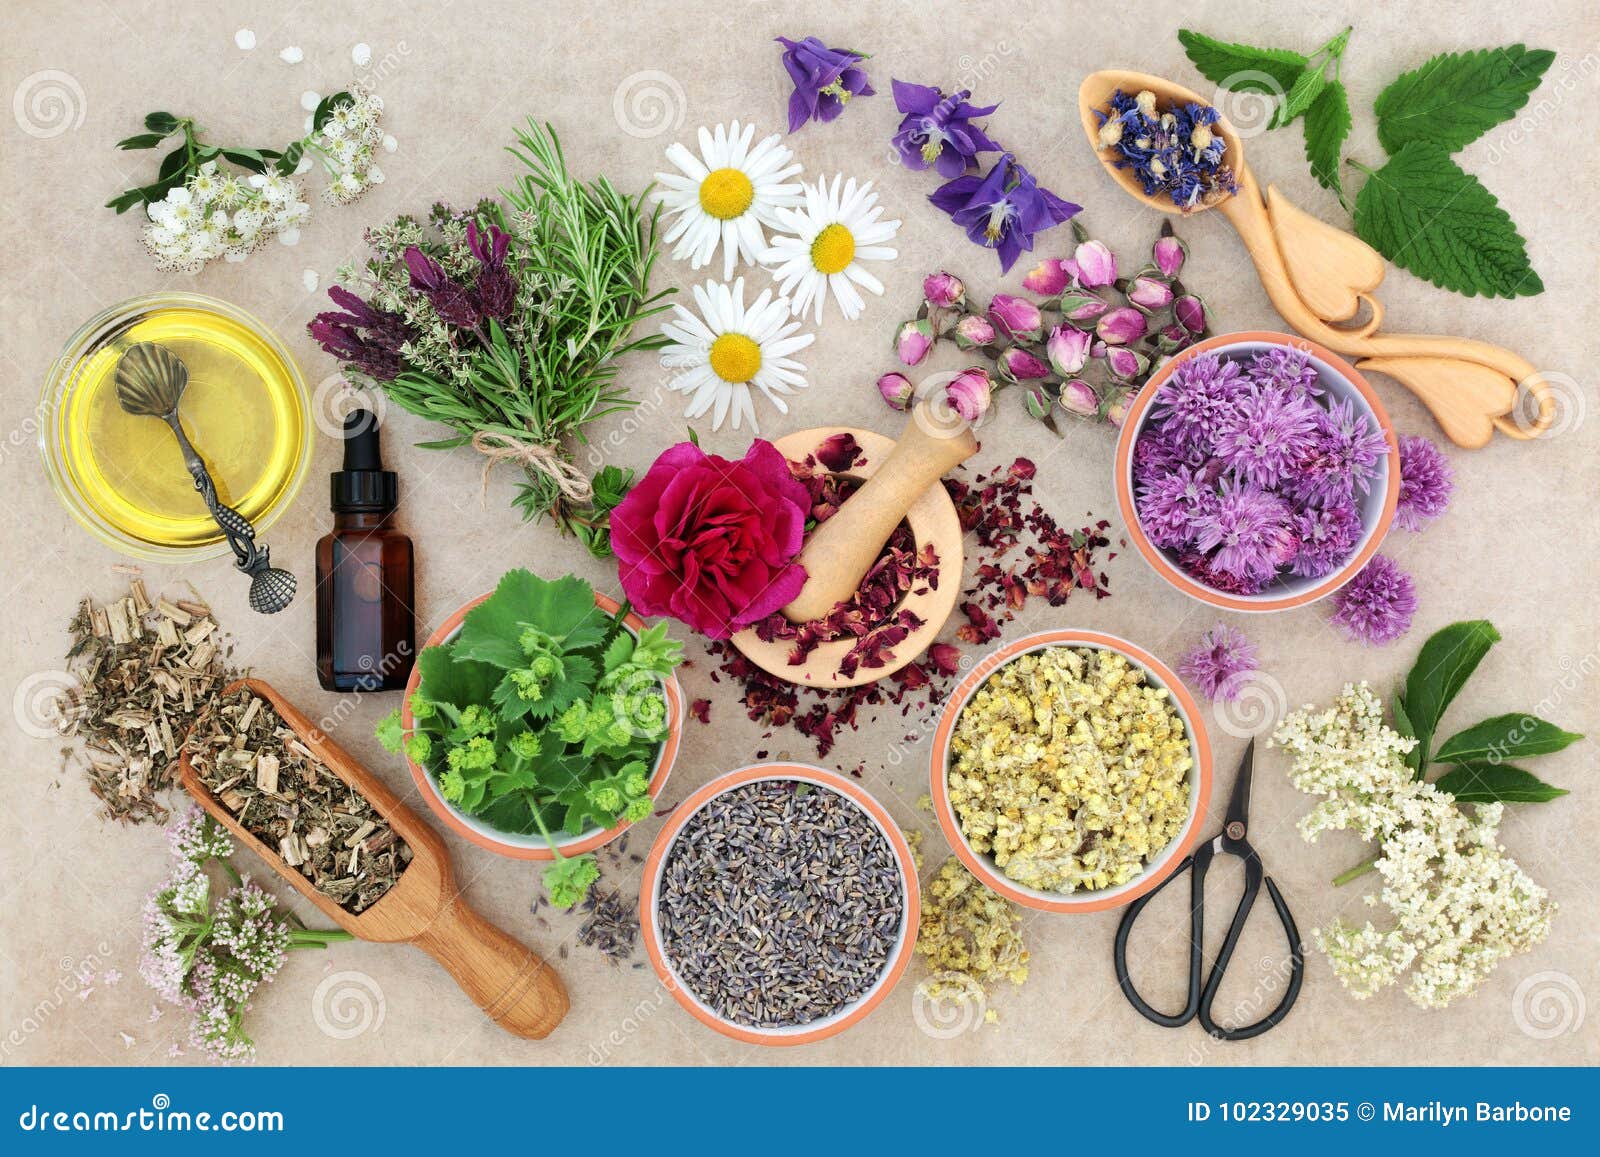 natural herbal medicine